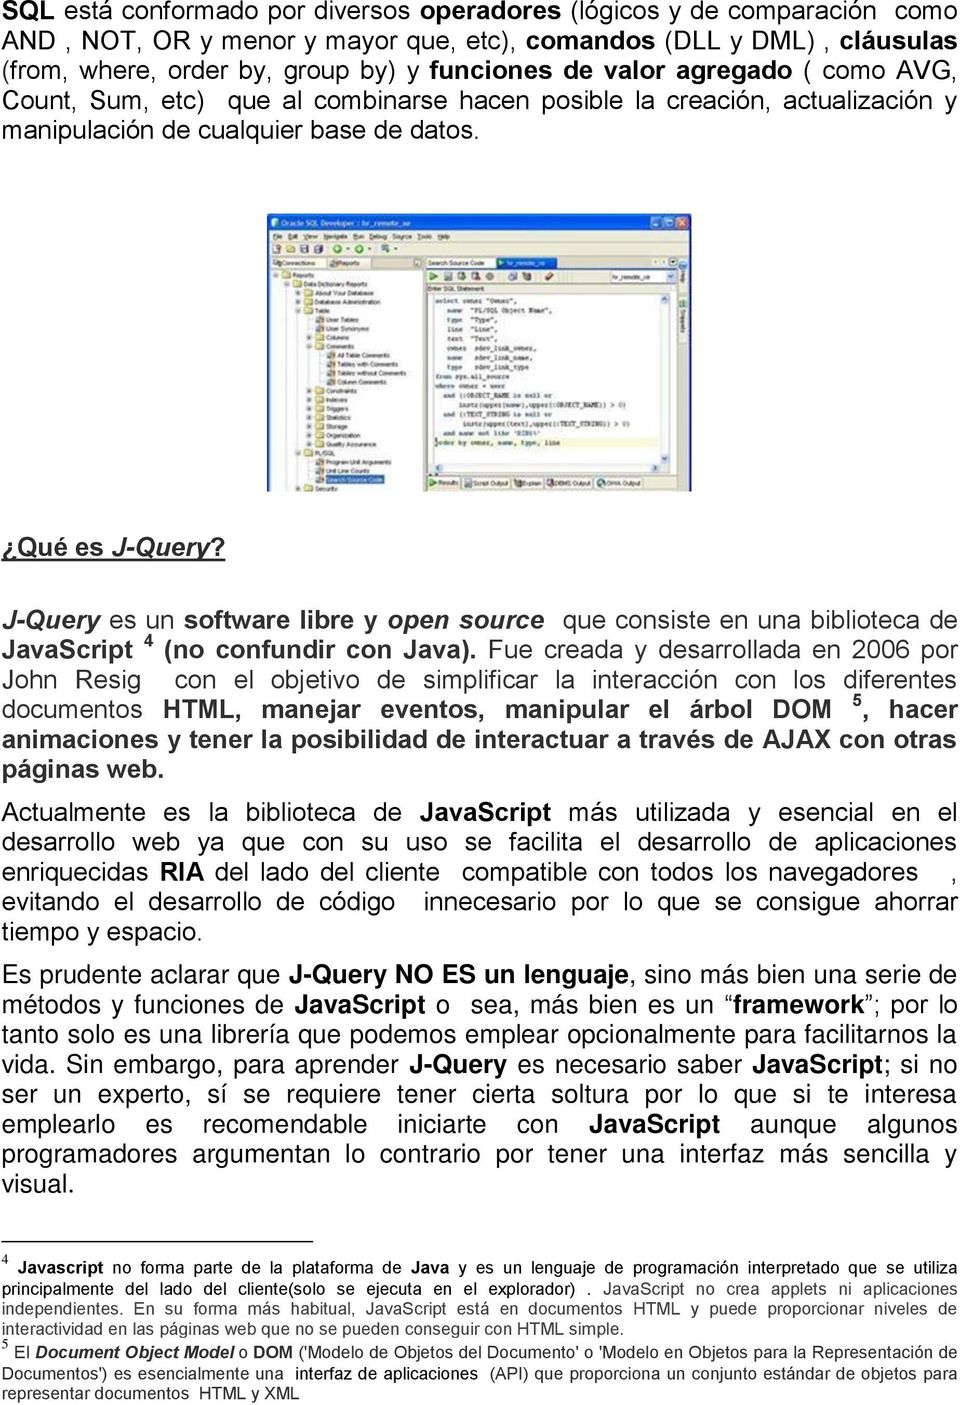 J-Query es un software libre y open source que consiste en una biblioteca de JavaScript 4 (no confundir con Java).